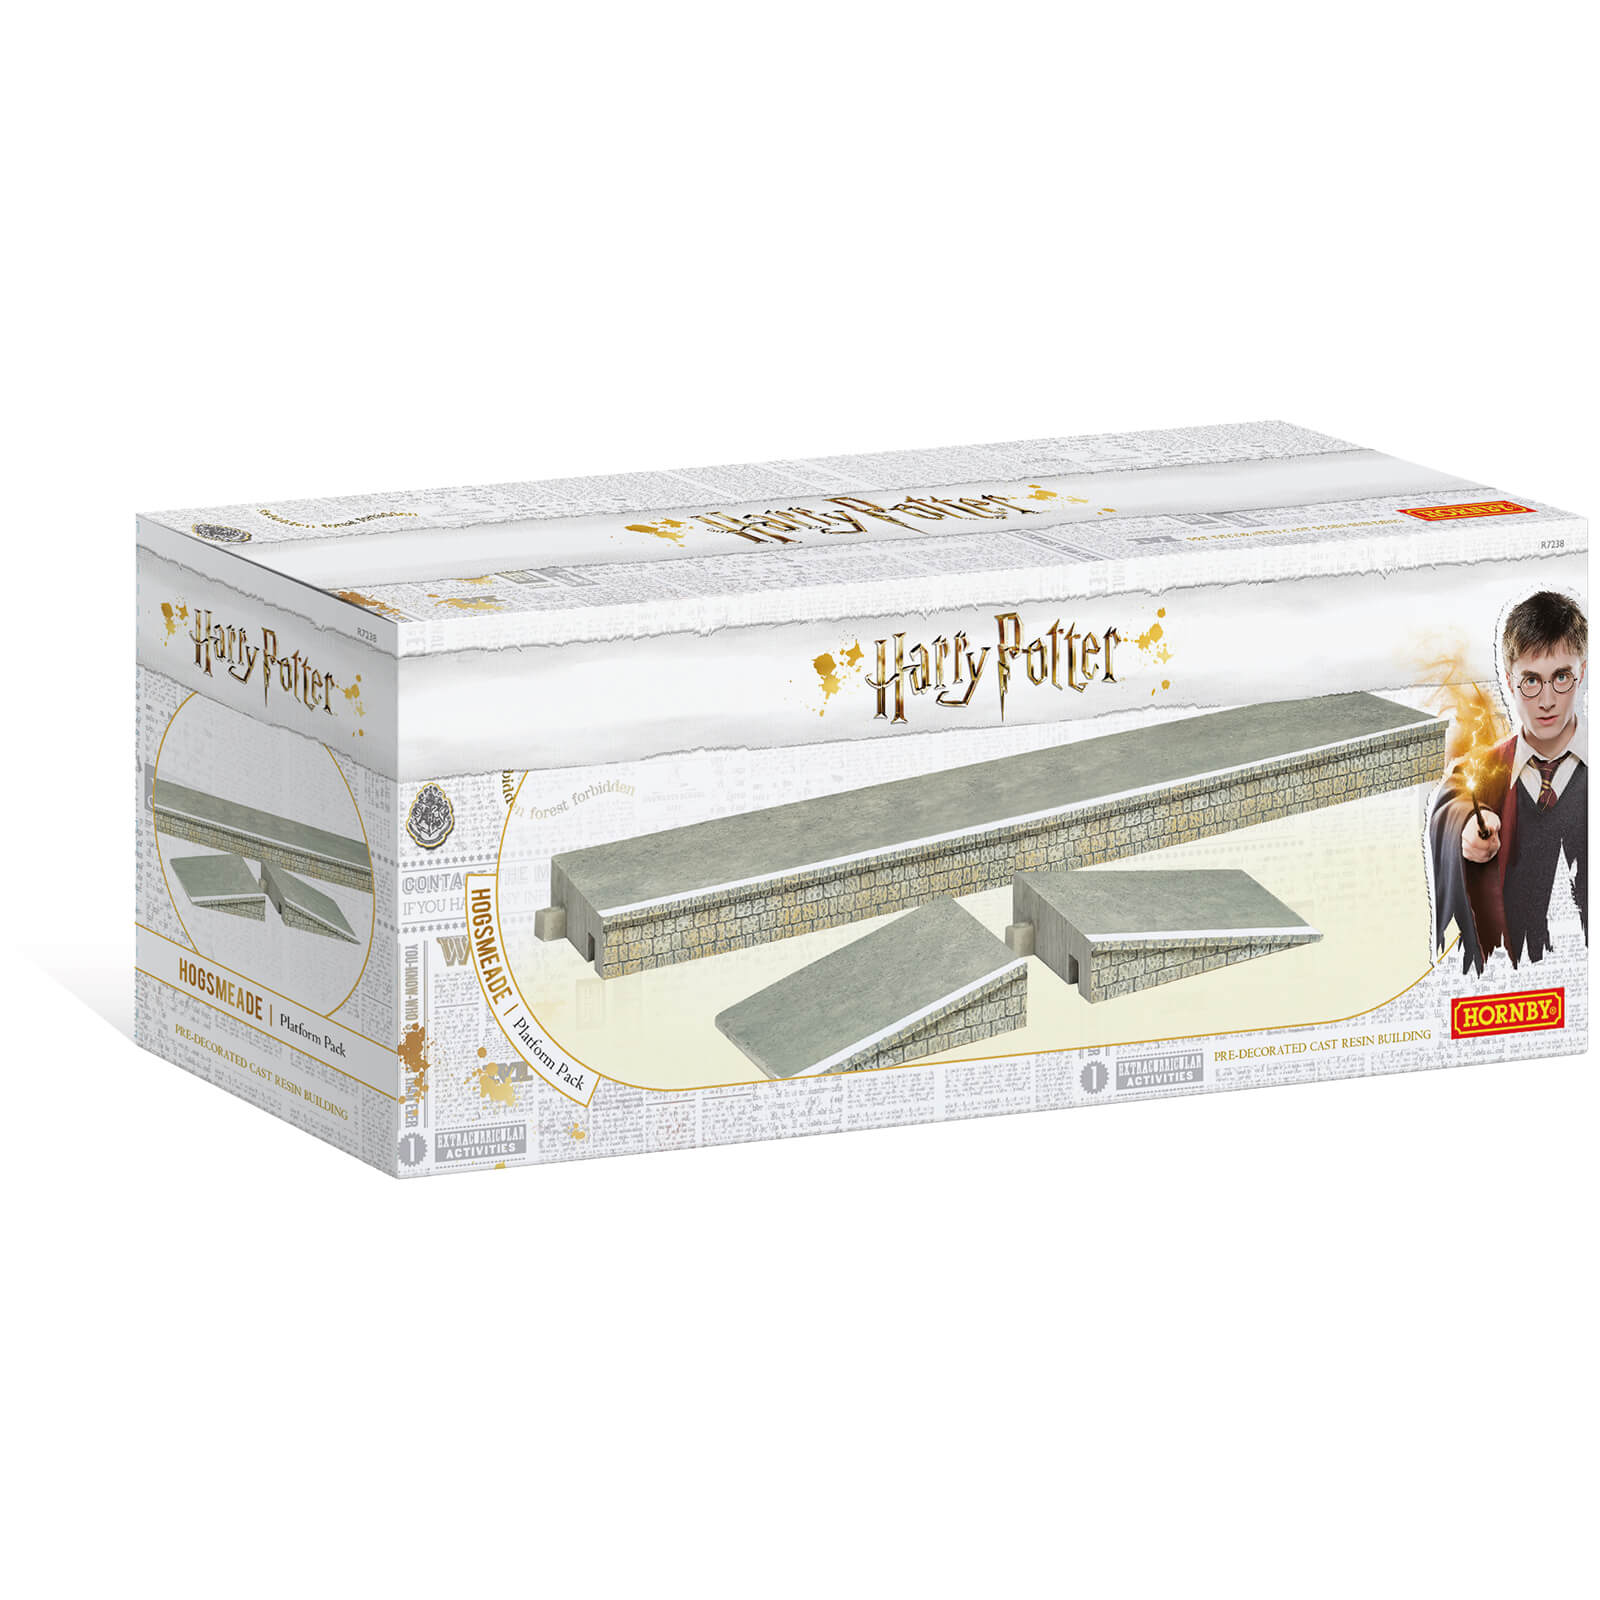 Image of Harry Potter Hogsmeade Station Platform Model Pack